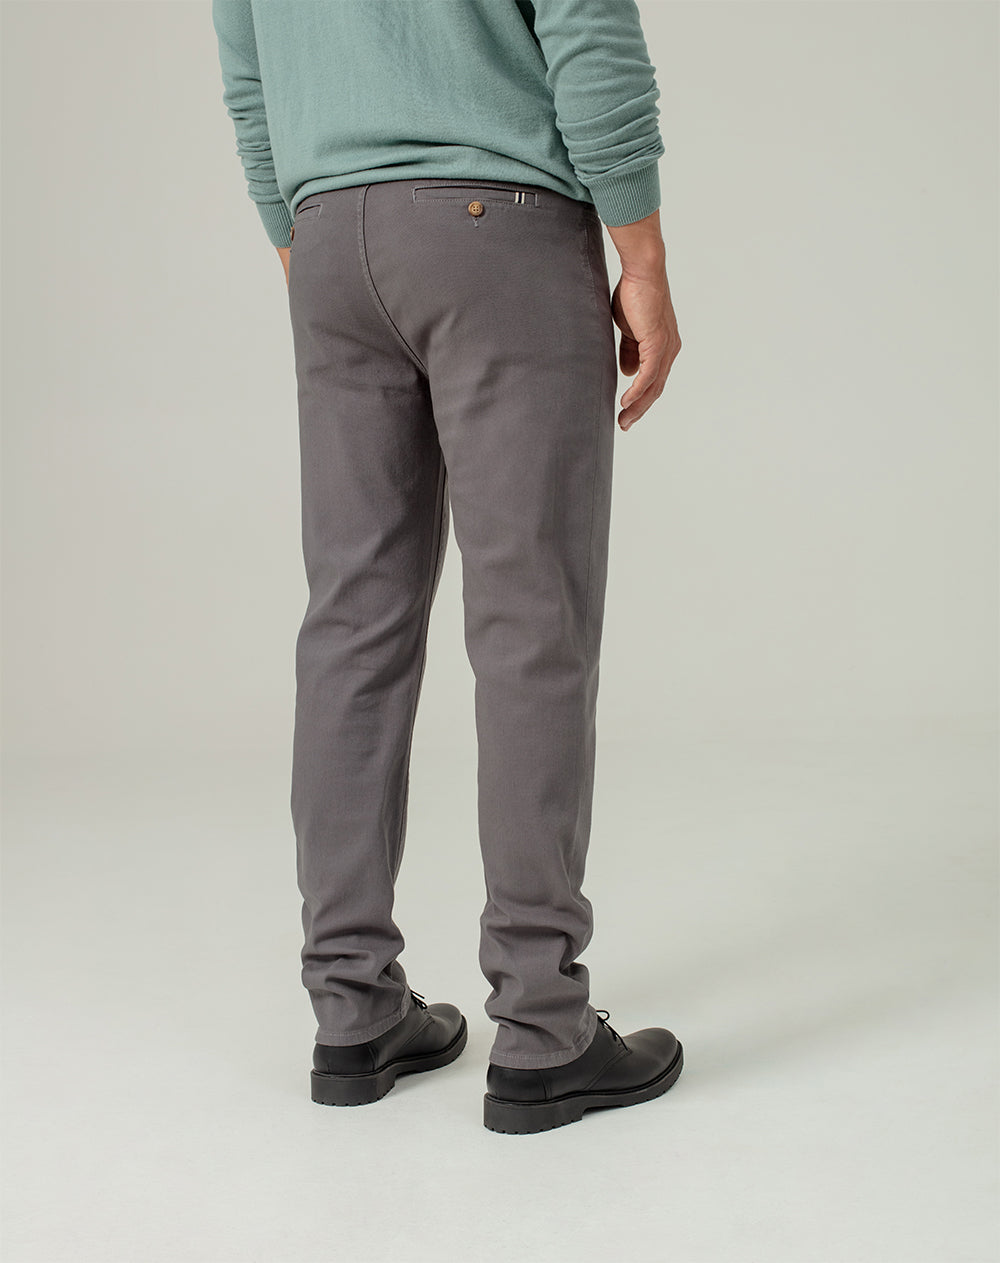 Pantalón regular fit tiro medio gris